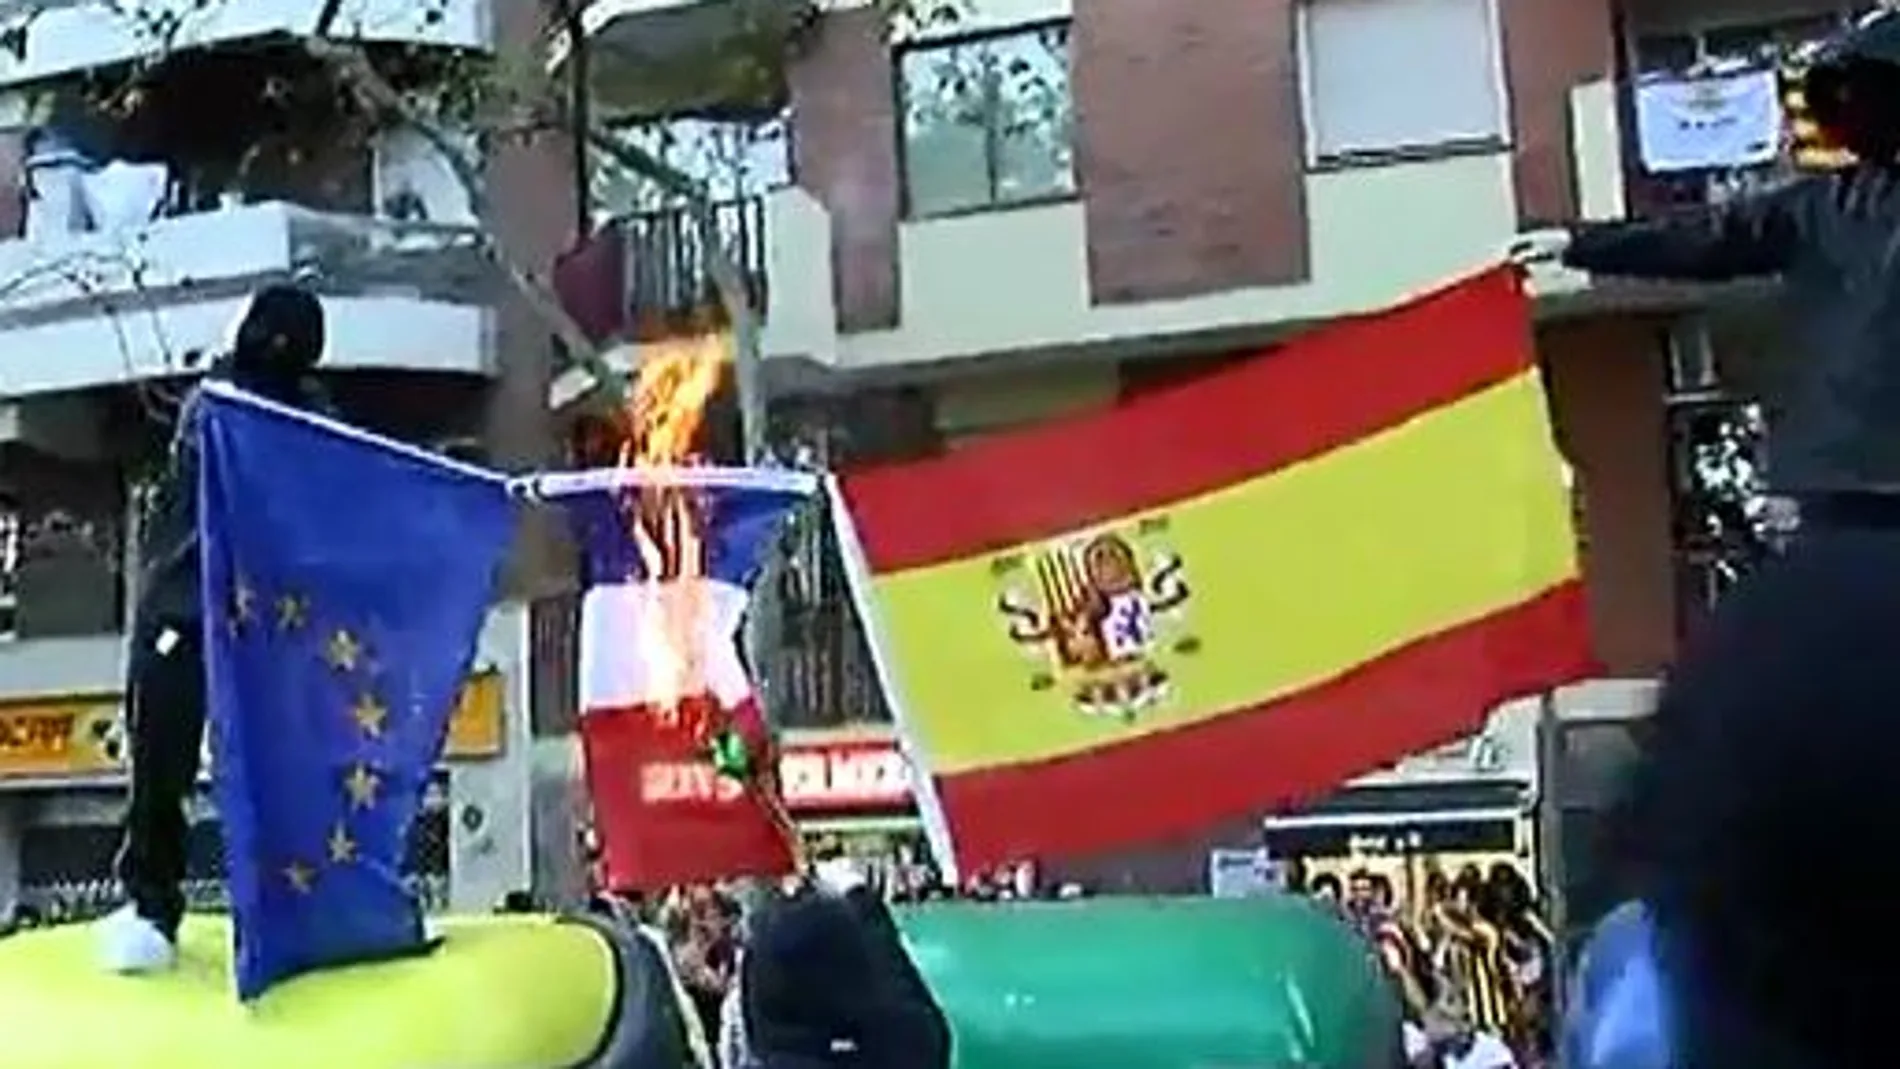 Los encapuchados han quemado tres banderas